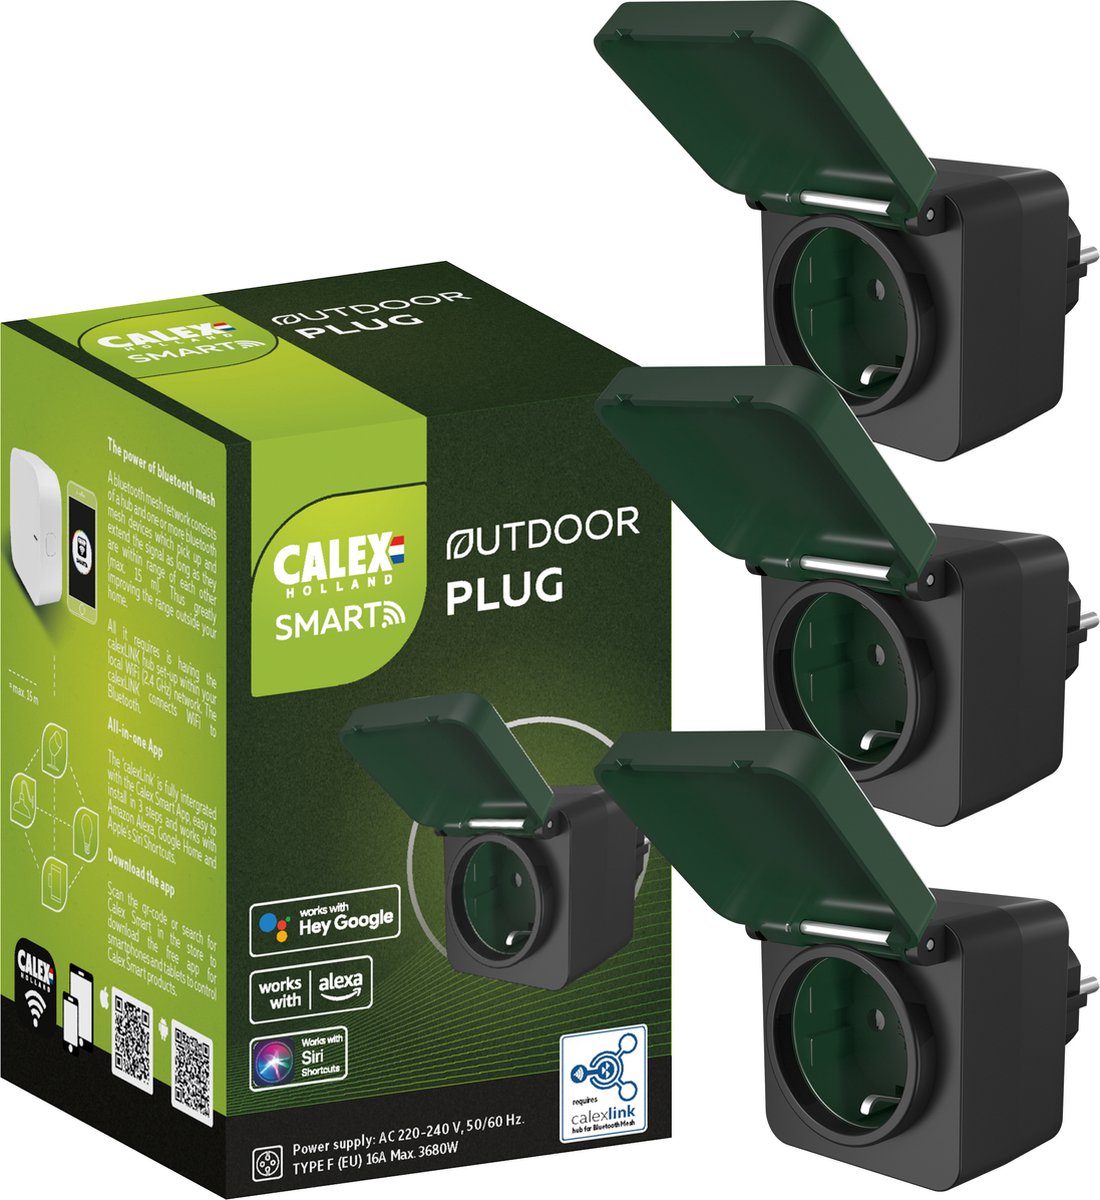 Calex Slimme Buiten Stekker - Set van 3 stuks - Smart Outdoor Plug EU - Inclusief Hub - Zwart